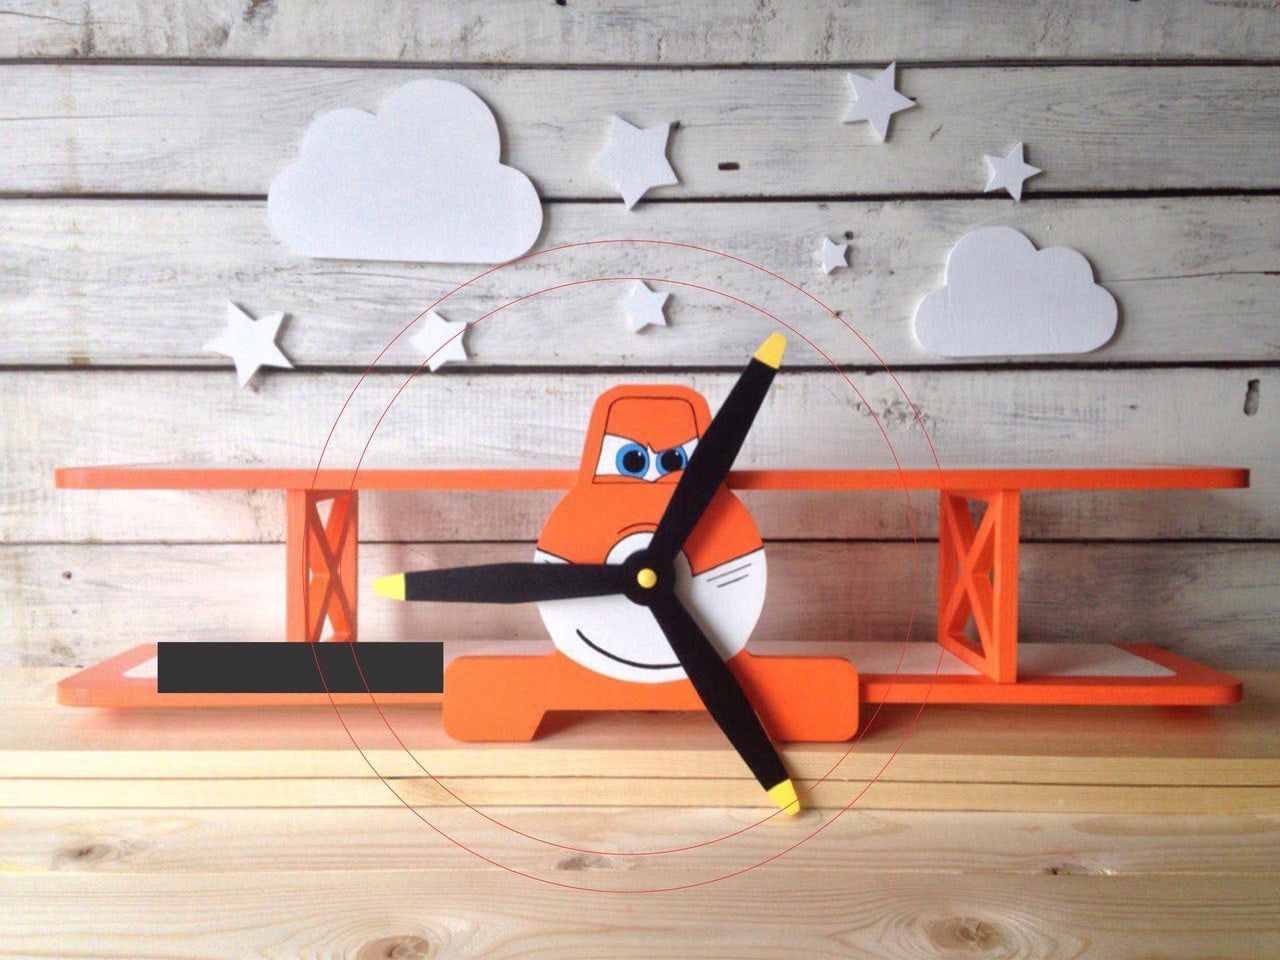 تصميم طائرة لعبه أطفال - تصميم طائرة ديكور للاطفال بصيغة cdr